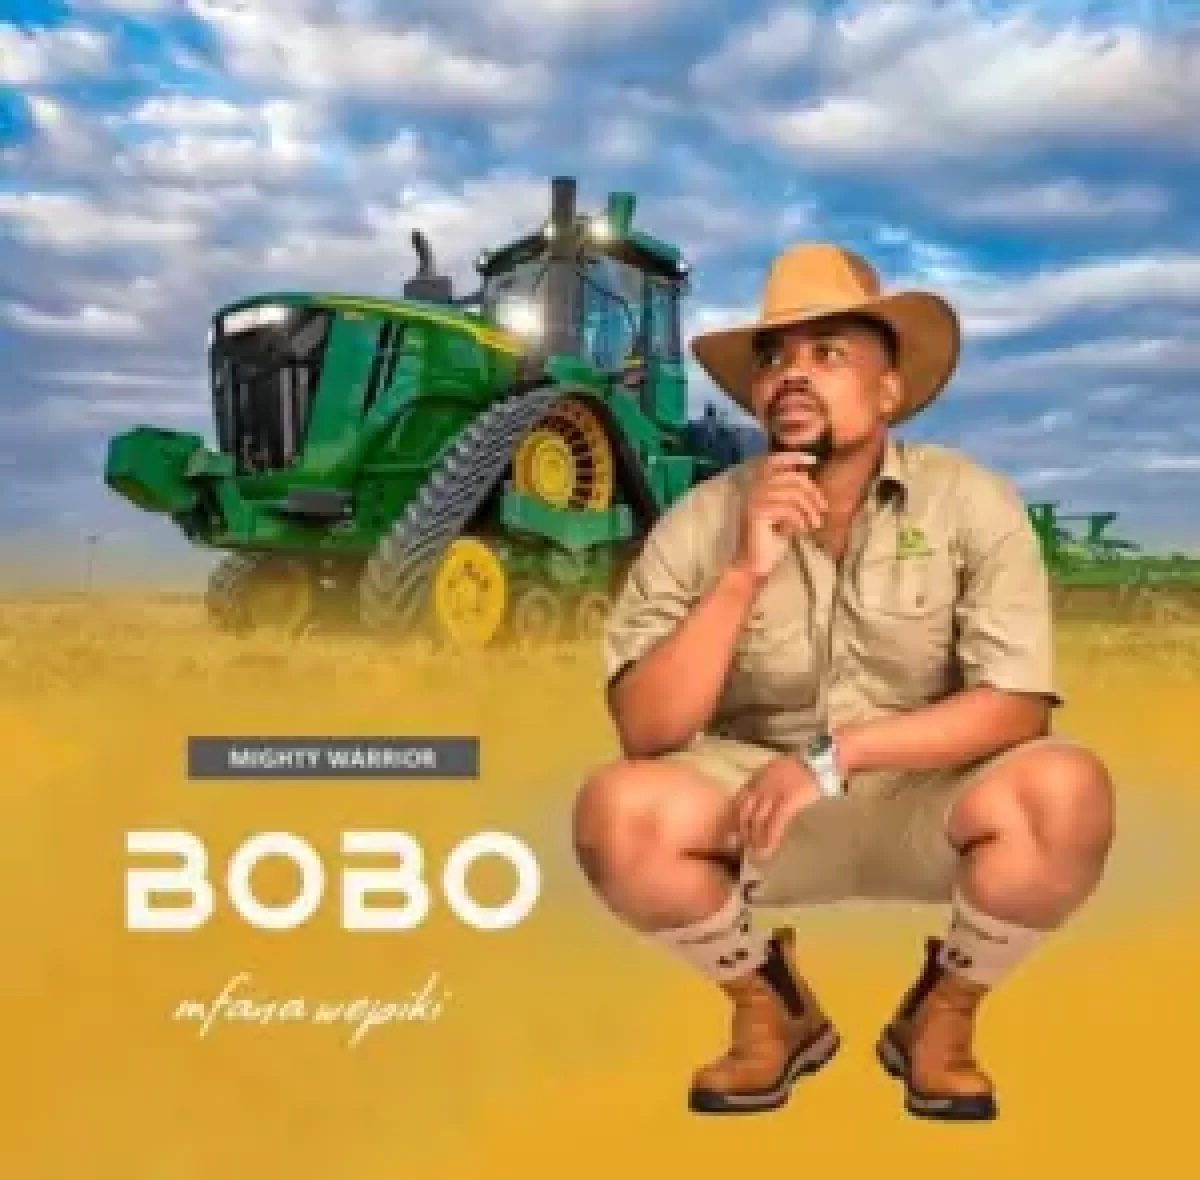 Mighty Worrior by Bobo Mfana Wepiki | Album